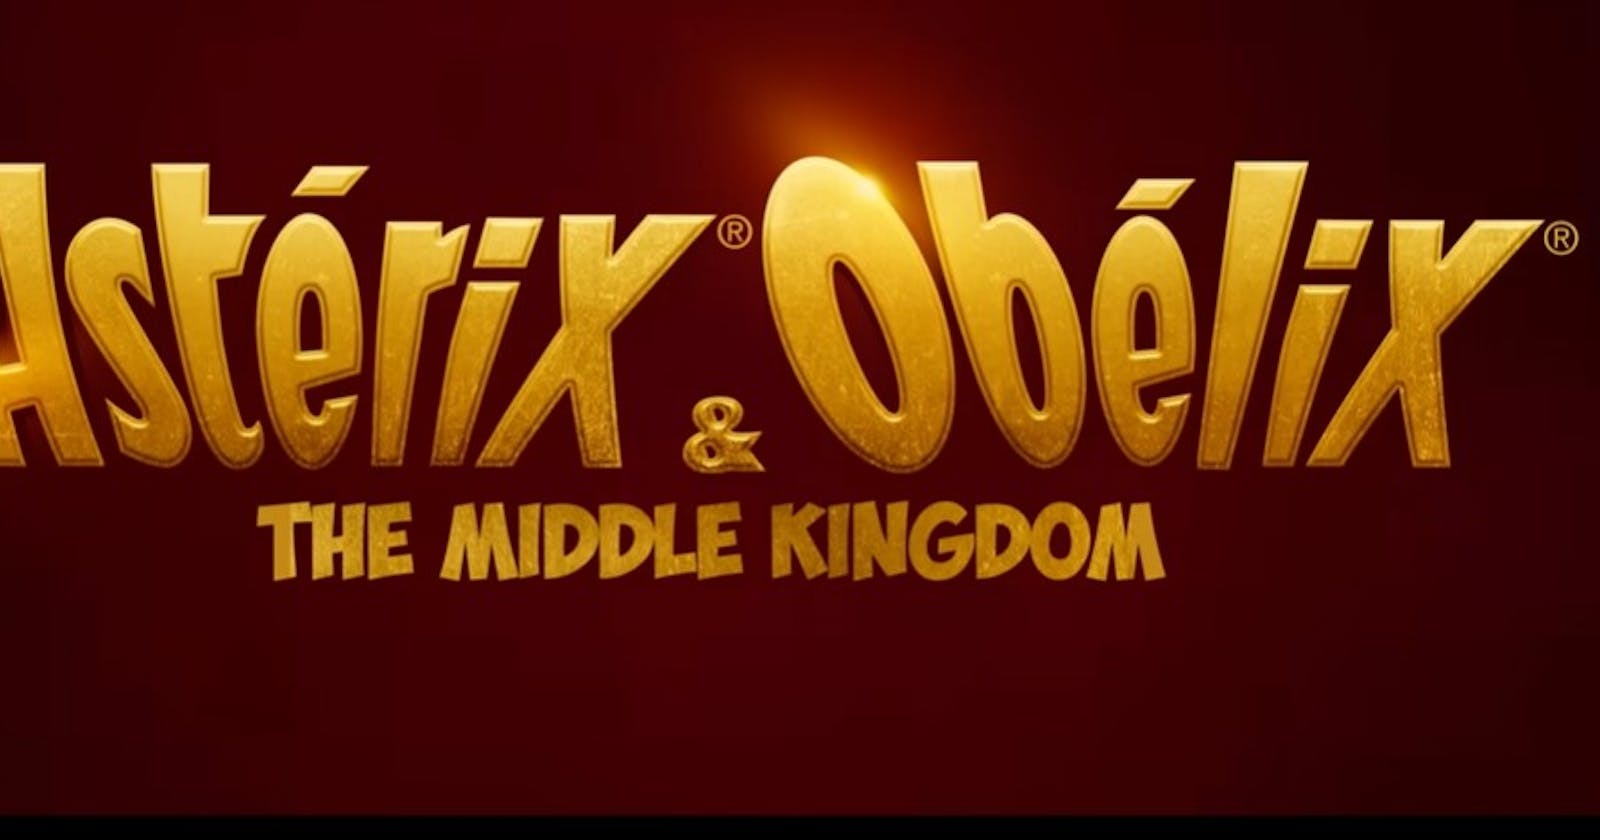 [HD/voir] Astérix & Obélix : L'Empire du Milieu film complet streaming gratuit en français